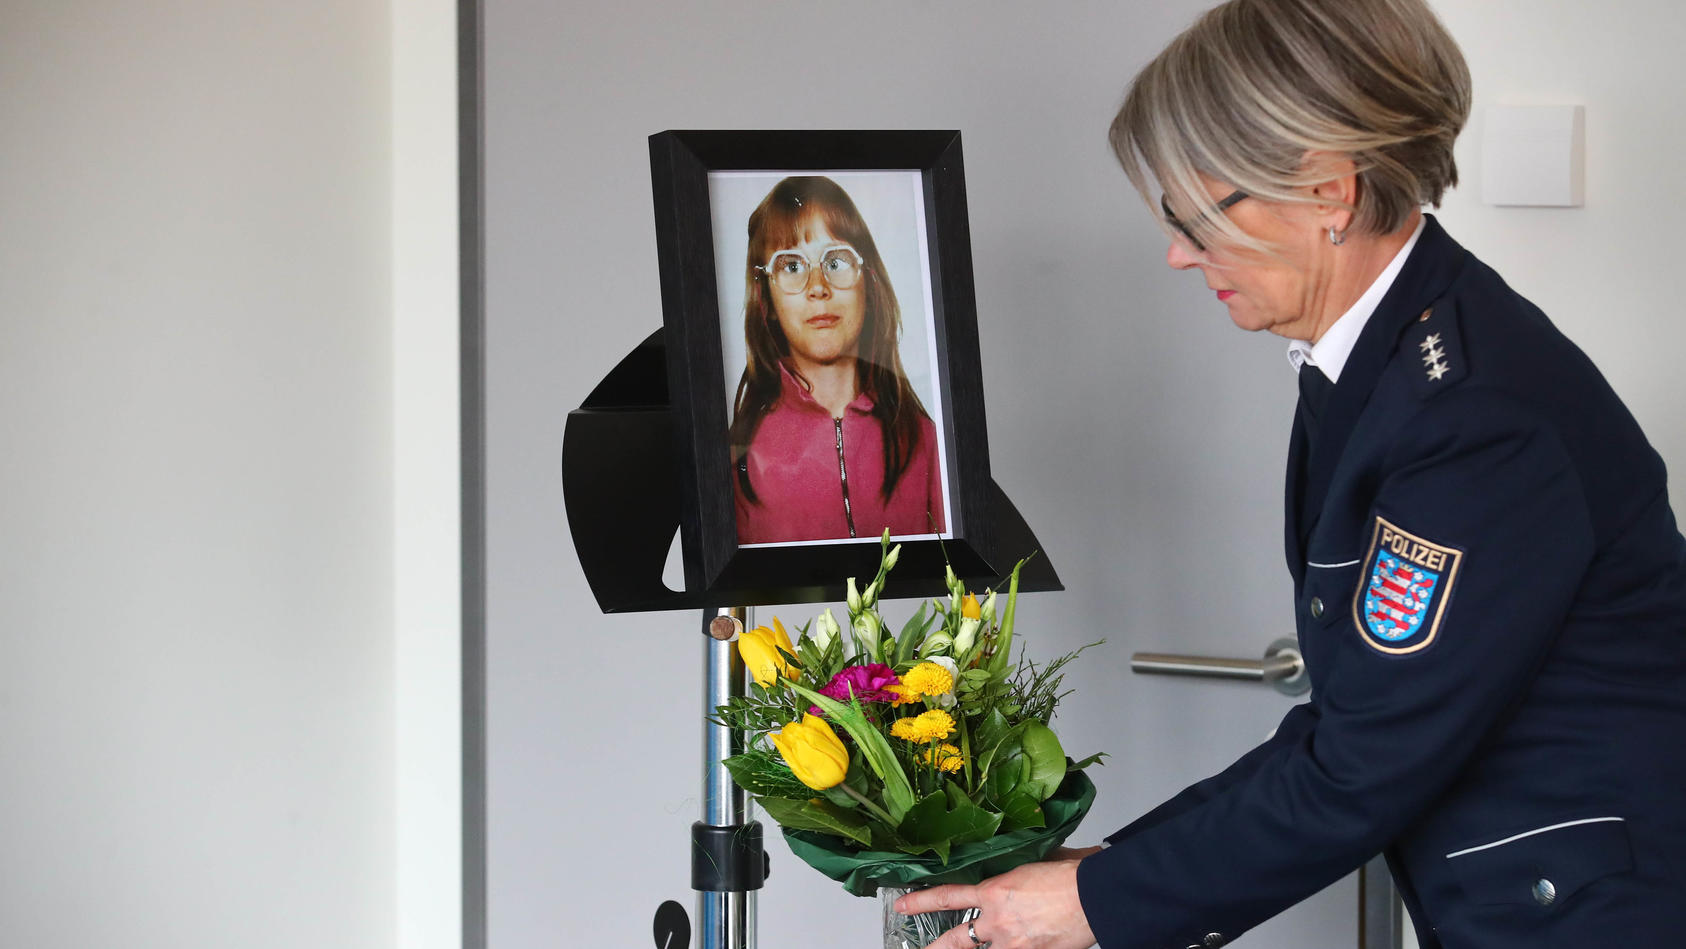 ARCHIV - 06.03.2018, Thüringen, Jena: Eine Beamtin der Polizei Jena stellt vor einer Pressekonferenz einen Blumenstrauß unter das Foto der ermordeten Stephanie. Im Fall aus dem Jahre 1991 war ein tatverdächtiger Mann festgenommen worden. Der Fall ist